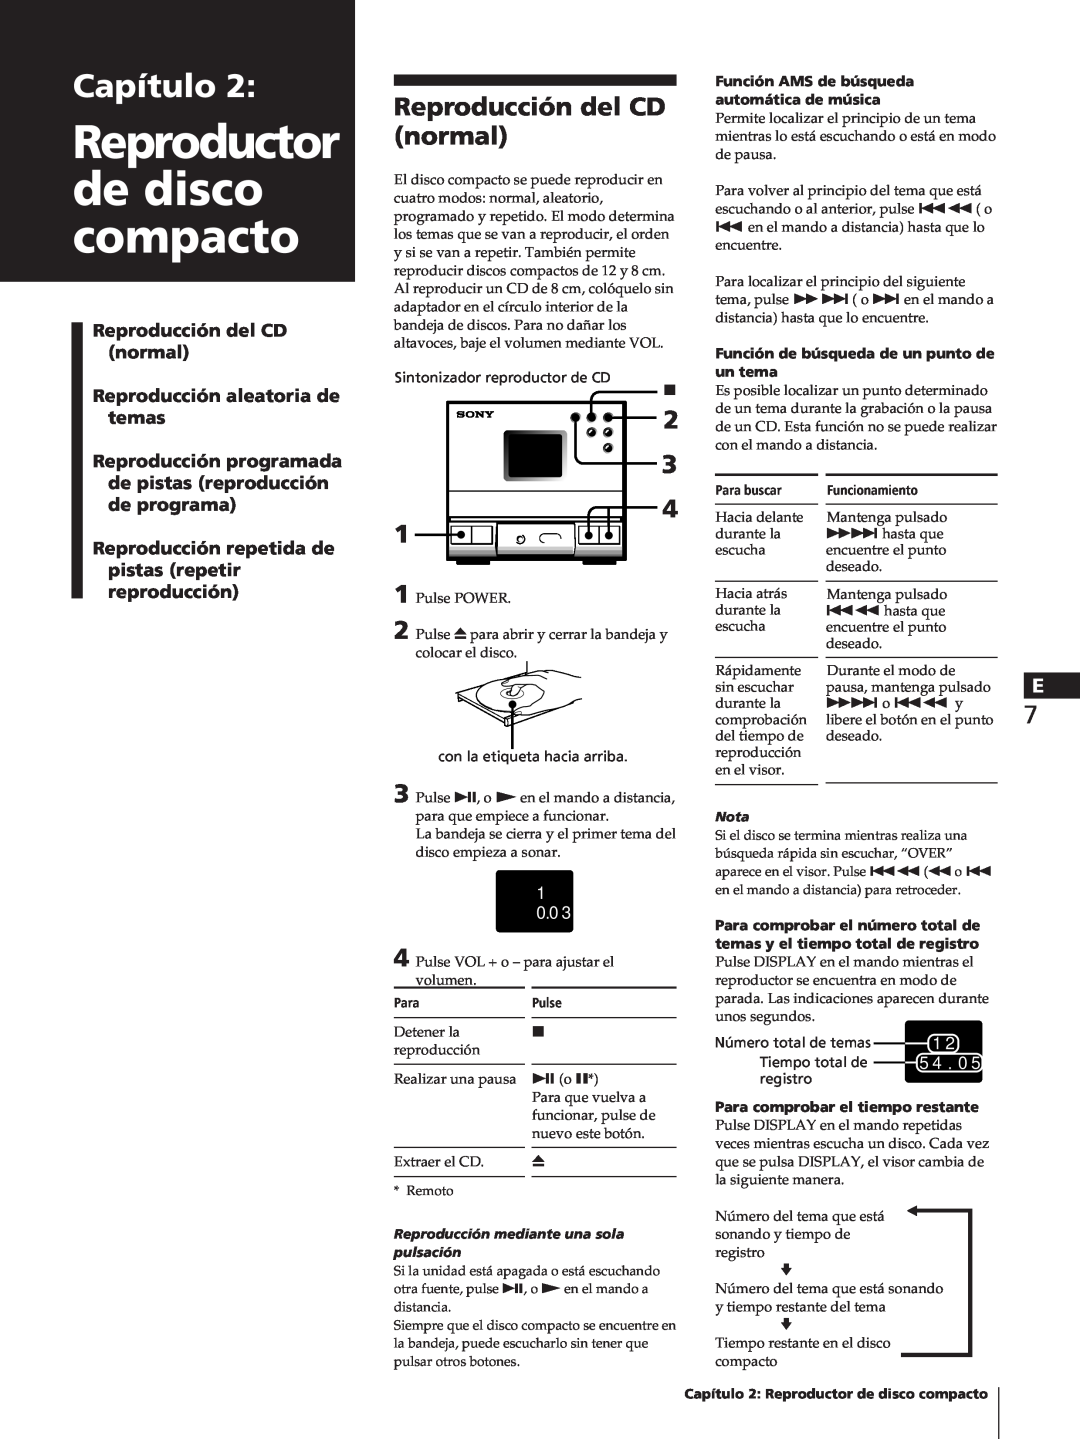 Sony TC-TX1 Reproductor de disco compacto, Capítulo, Reproducción del CD normal, Reproducción aleatoria de temas, 1 0 0 